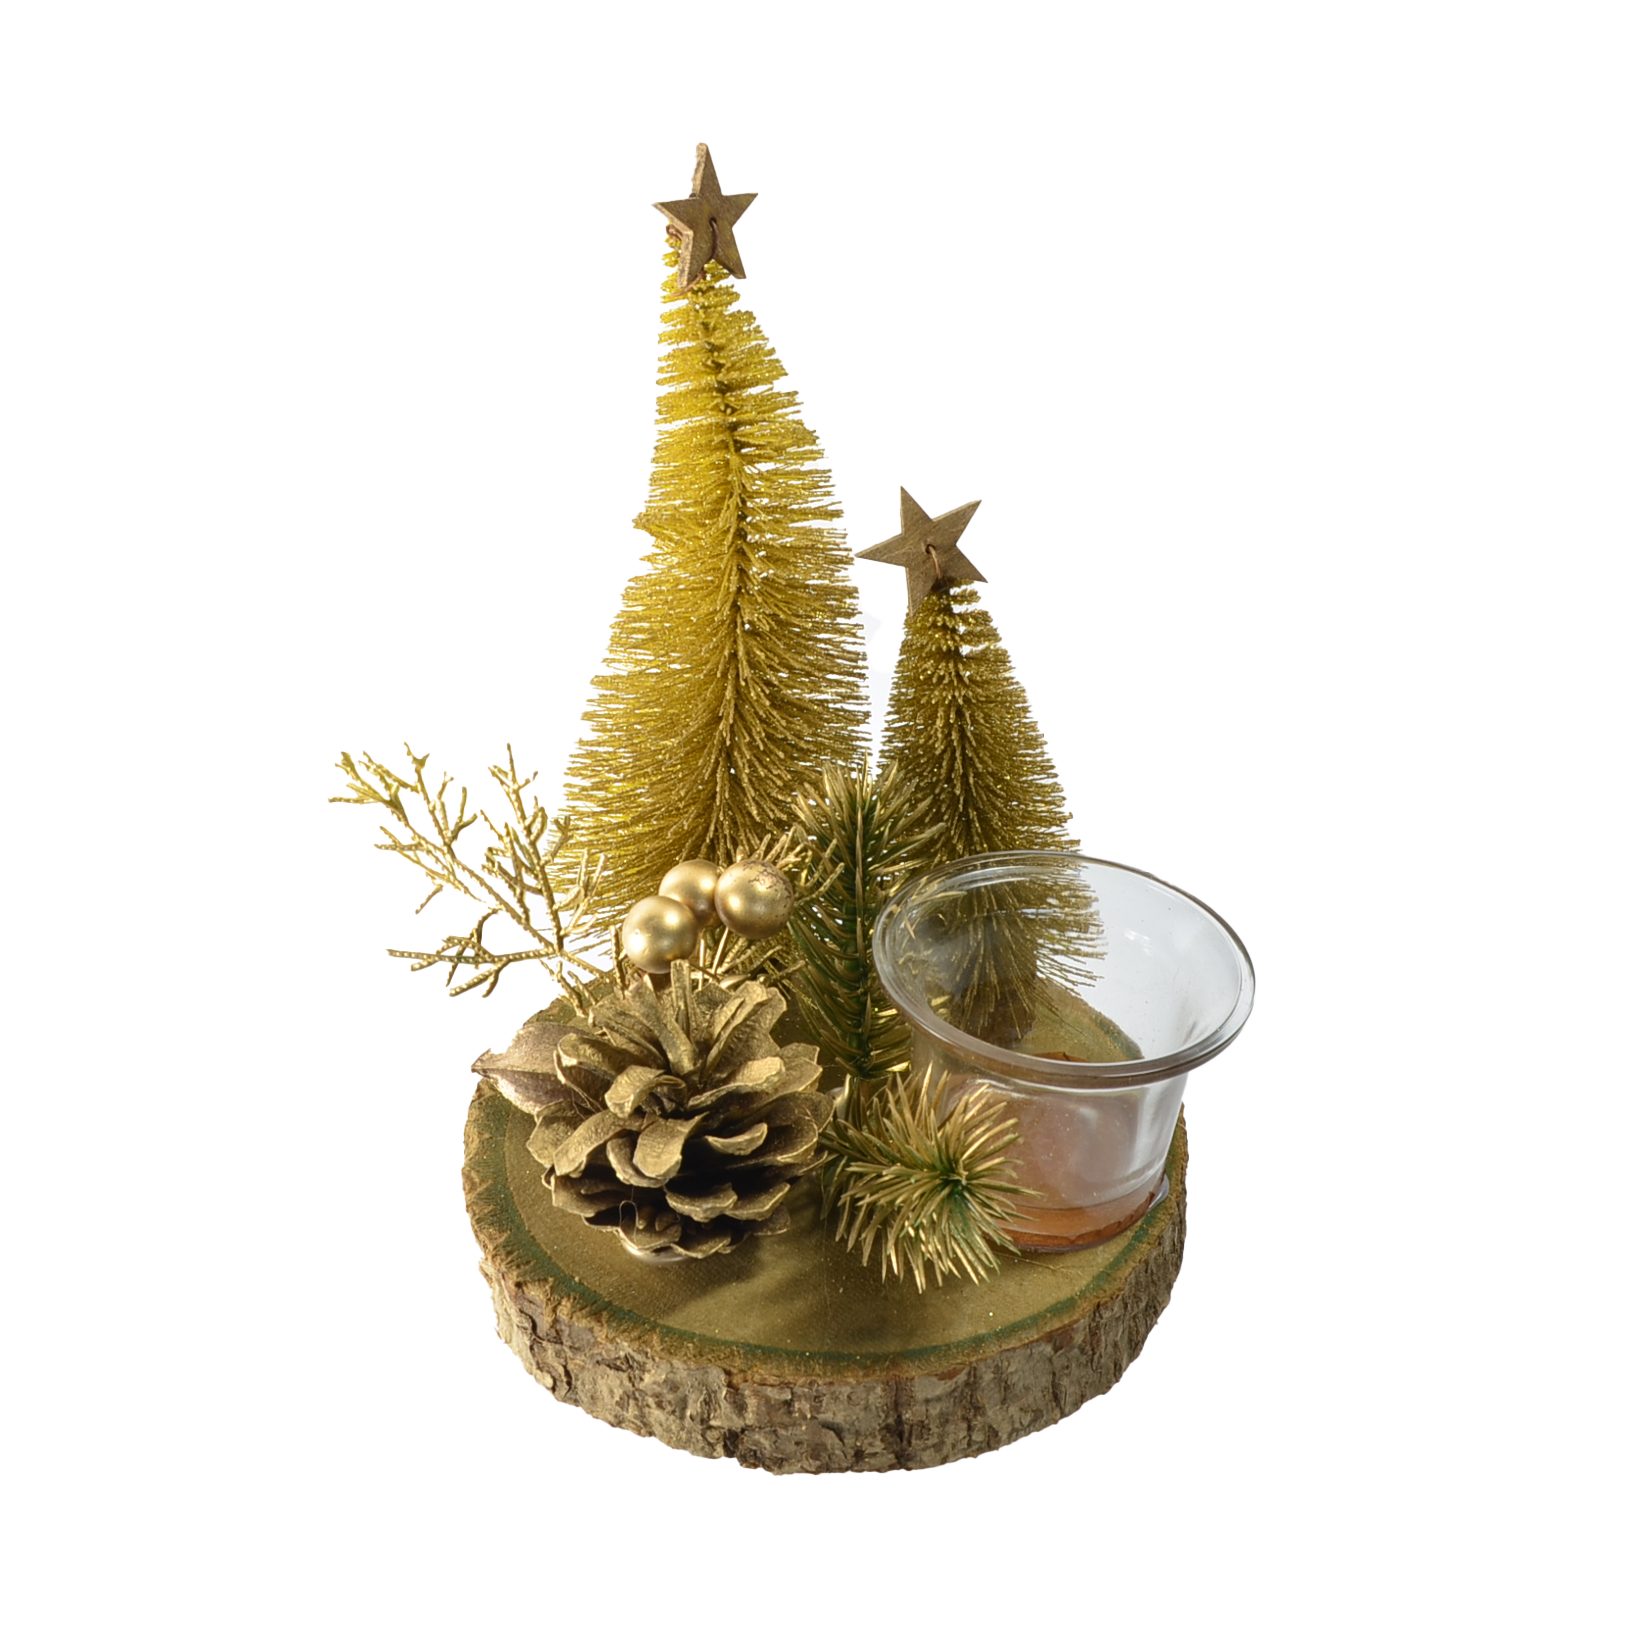 B&S Teelichthalter Weihnachts Teelichtglas auf Holzplatte in Goldtönen Ø 14 cm